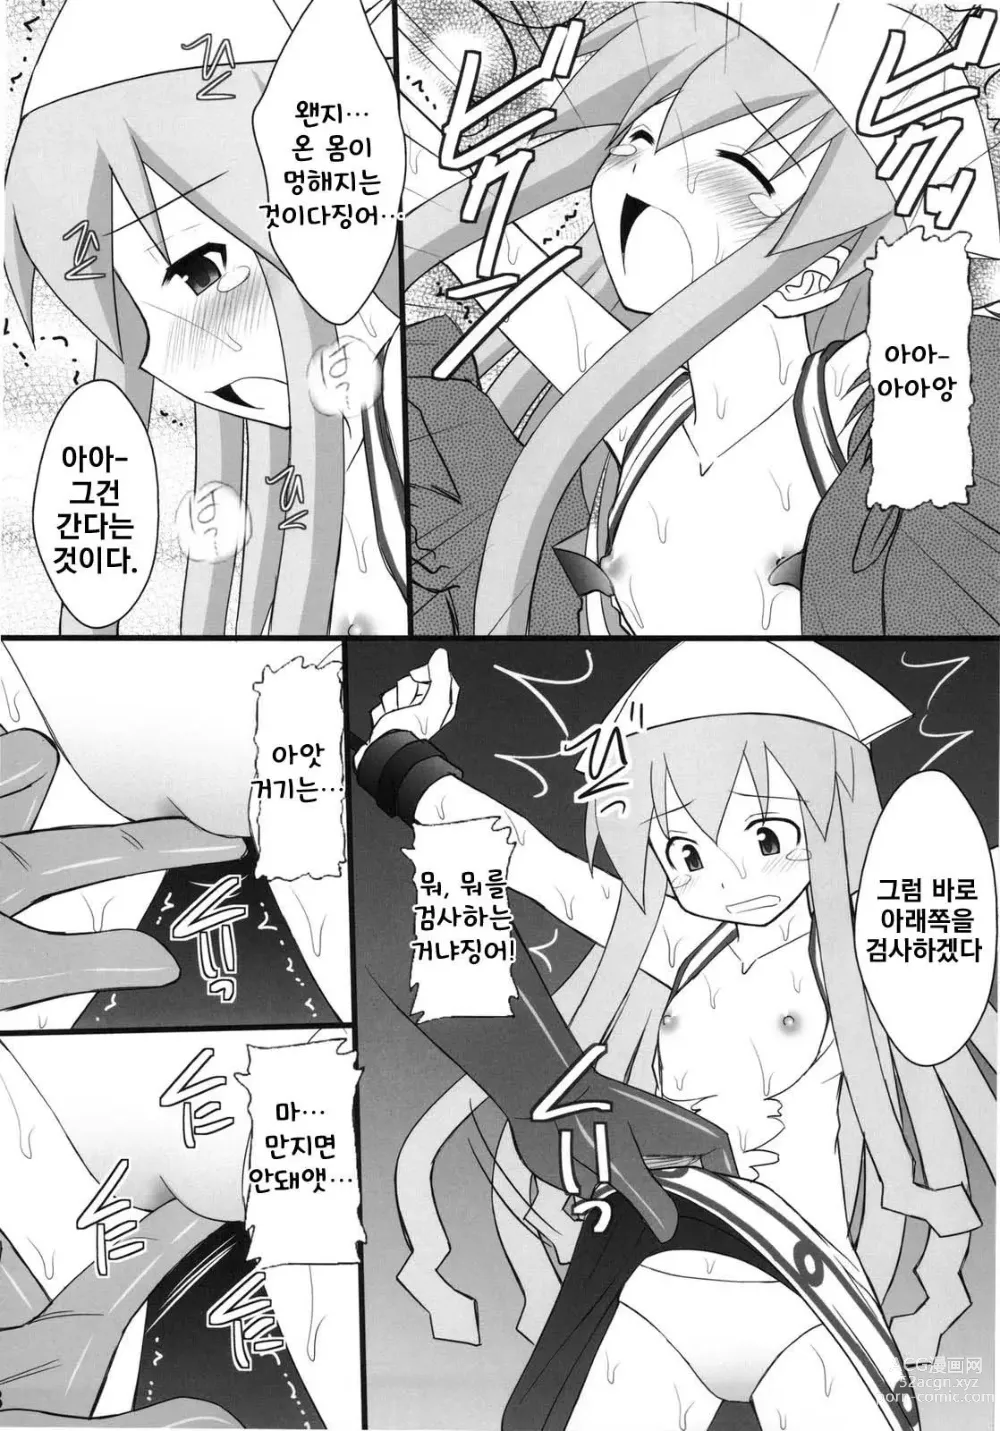 Page 6 of doujinshi 정신붕괴 할 때까지 간지럽히고 능욕해보는 테스트 4 오징어 소녀 하지 않겠는가